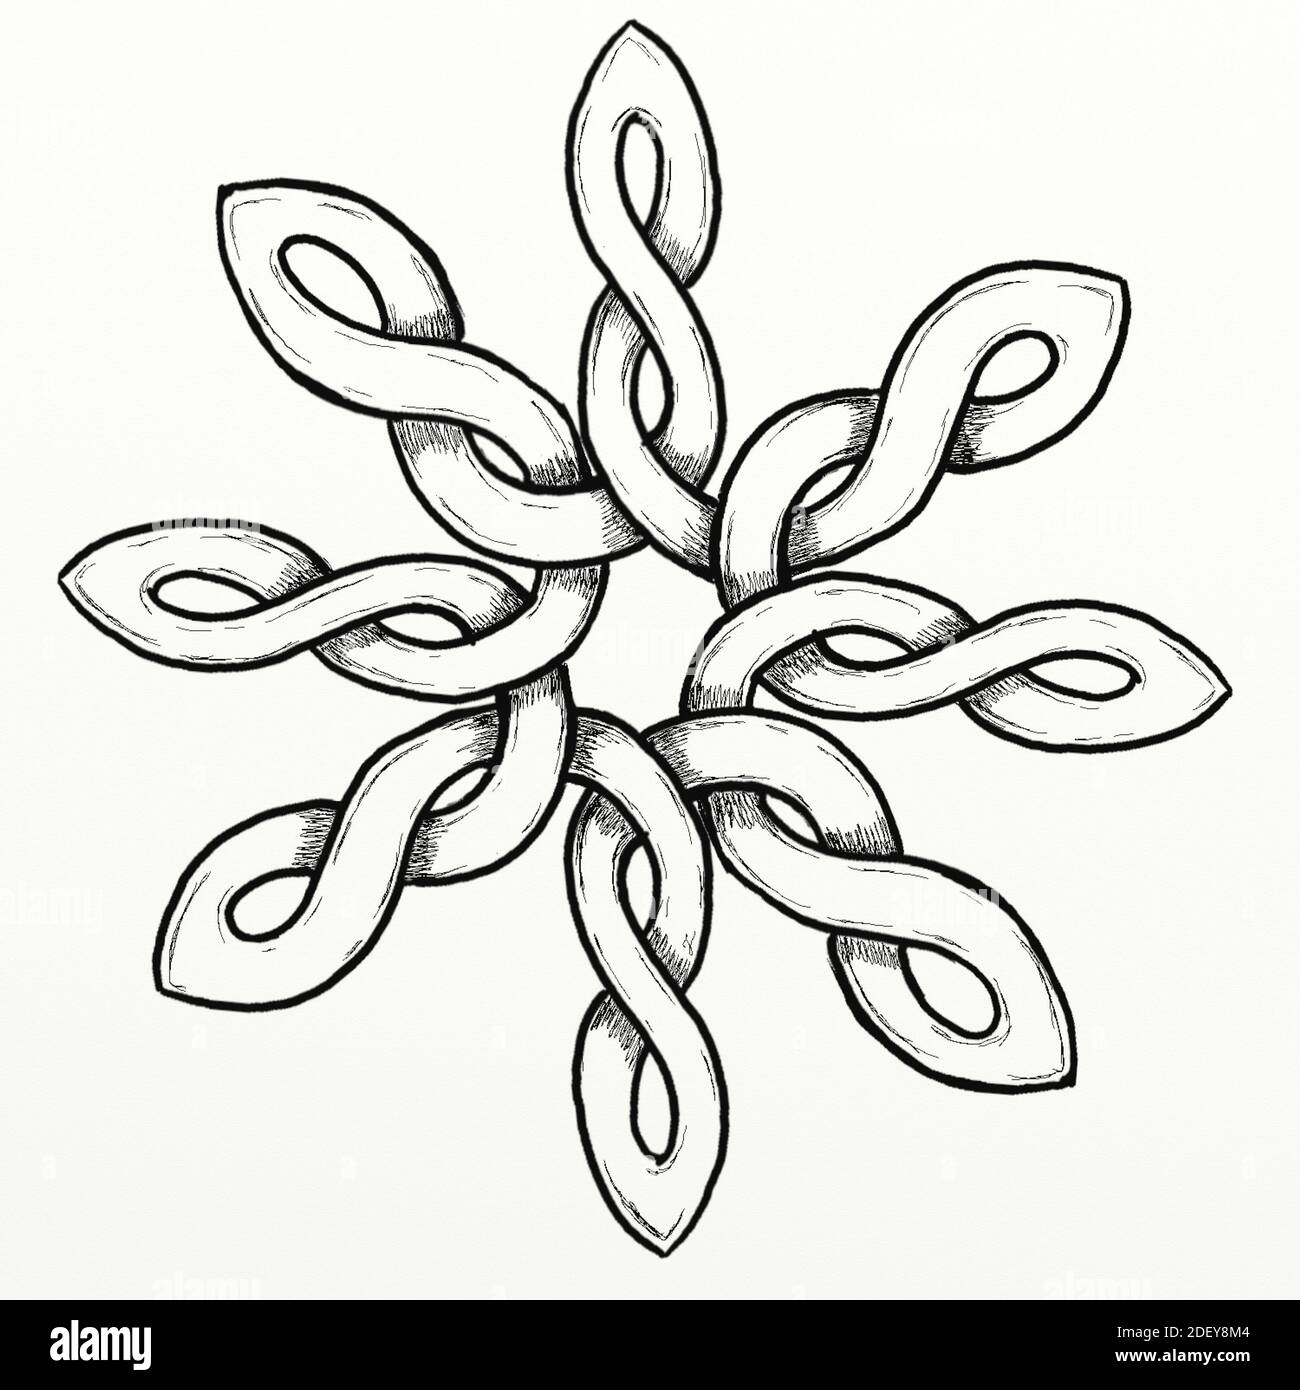 Nœud celtique conçu à la main en forme de rose stylisée. Ce nœud a été conçu à la main par l'artiste. Banque D'Images